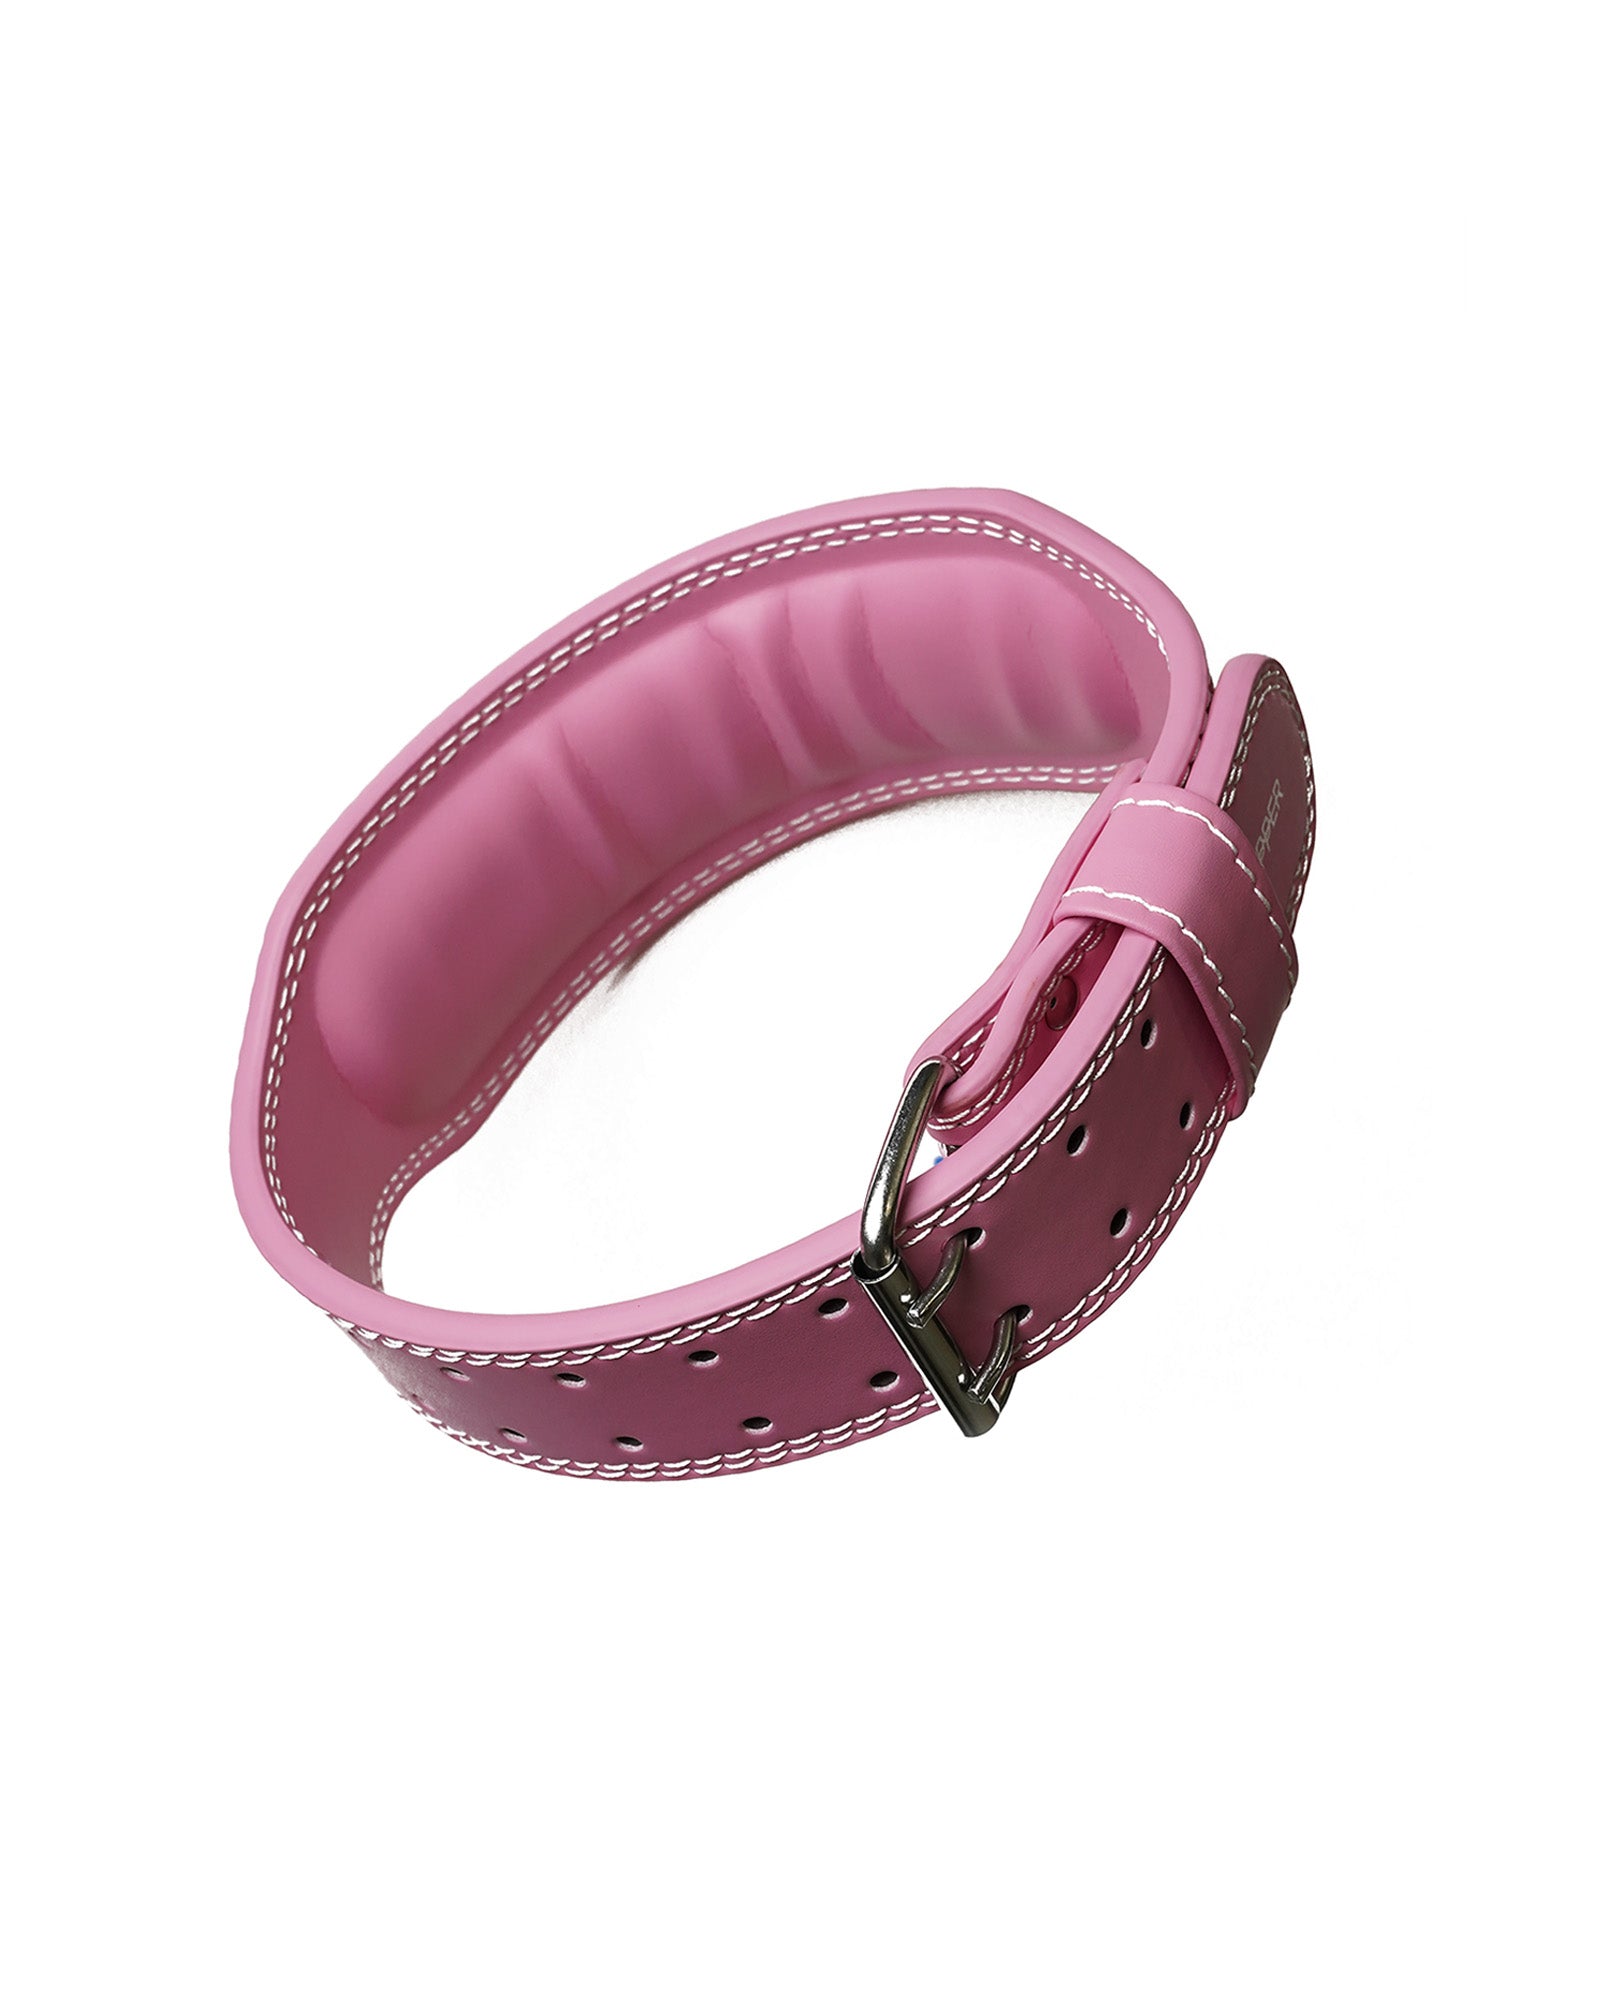 uppper lifting belt pink